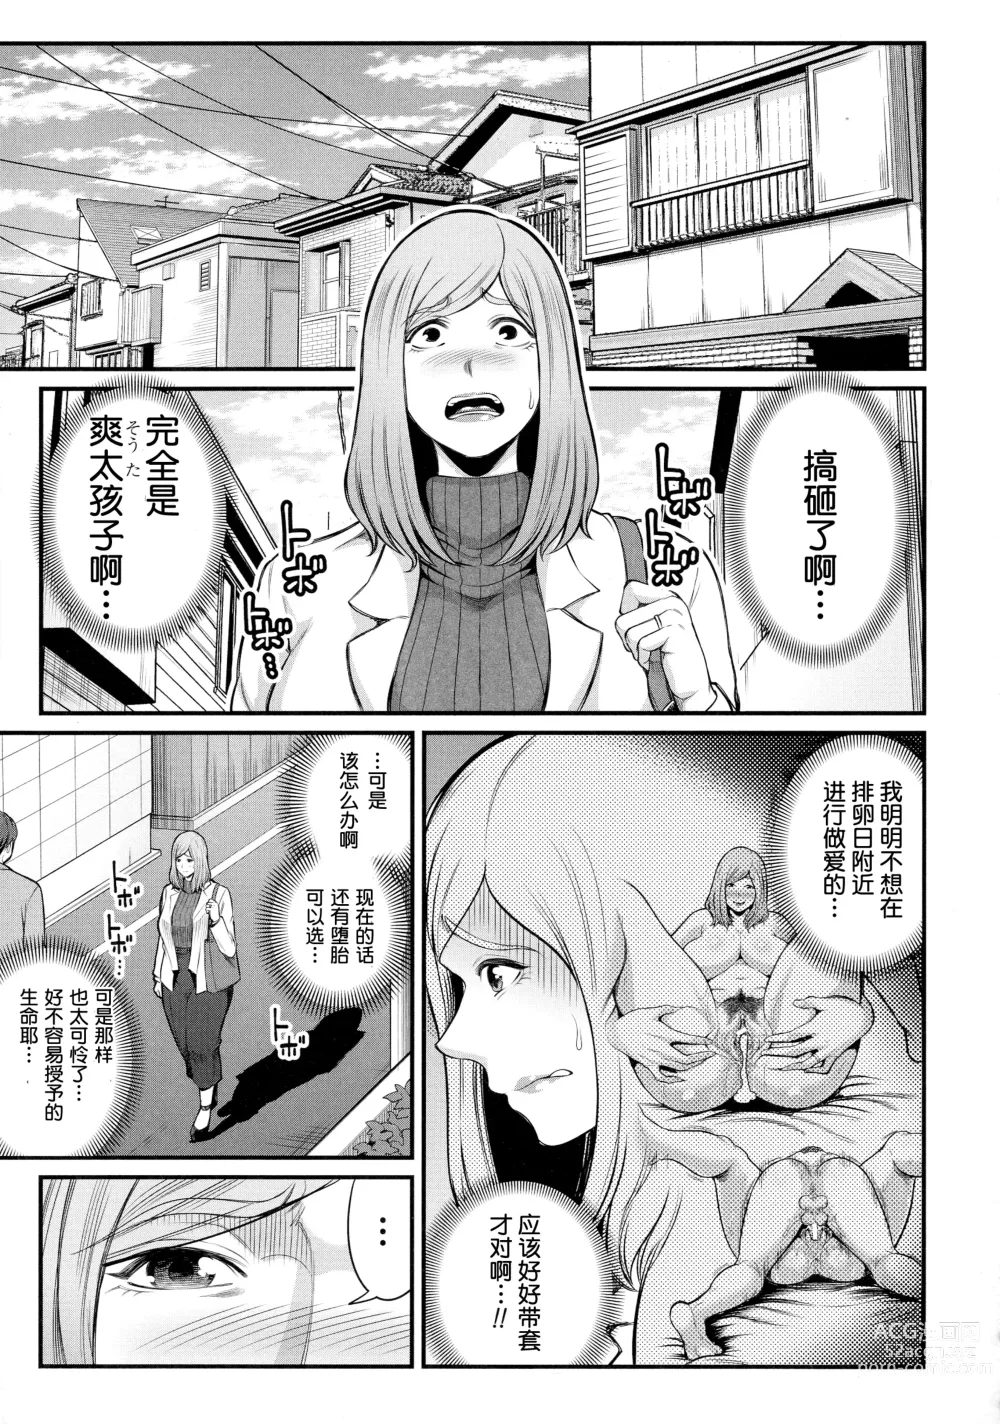 Page 3 of manga Okaa-san to Asobo Ninshin-hen